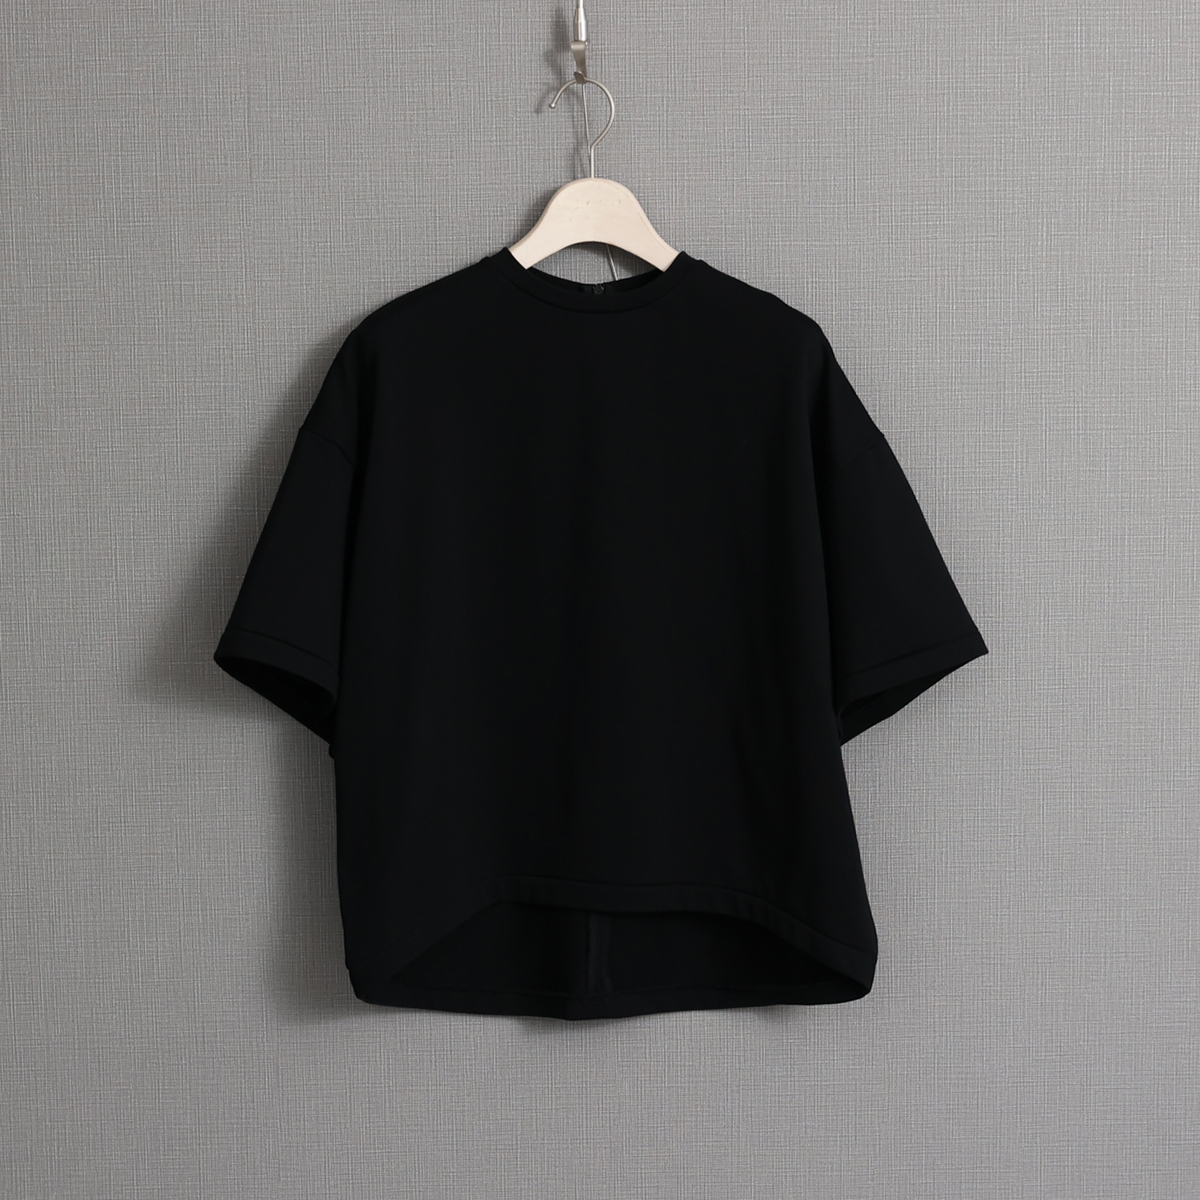 『Suvin cotton』 big size tops BLACK画像